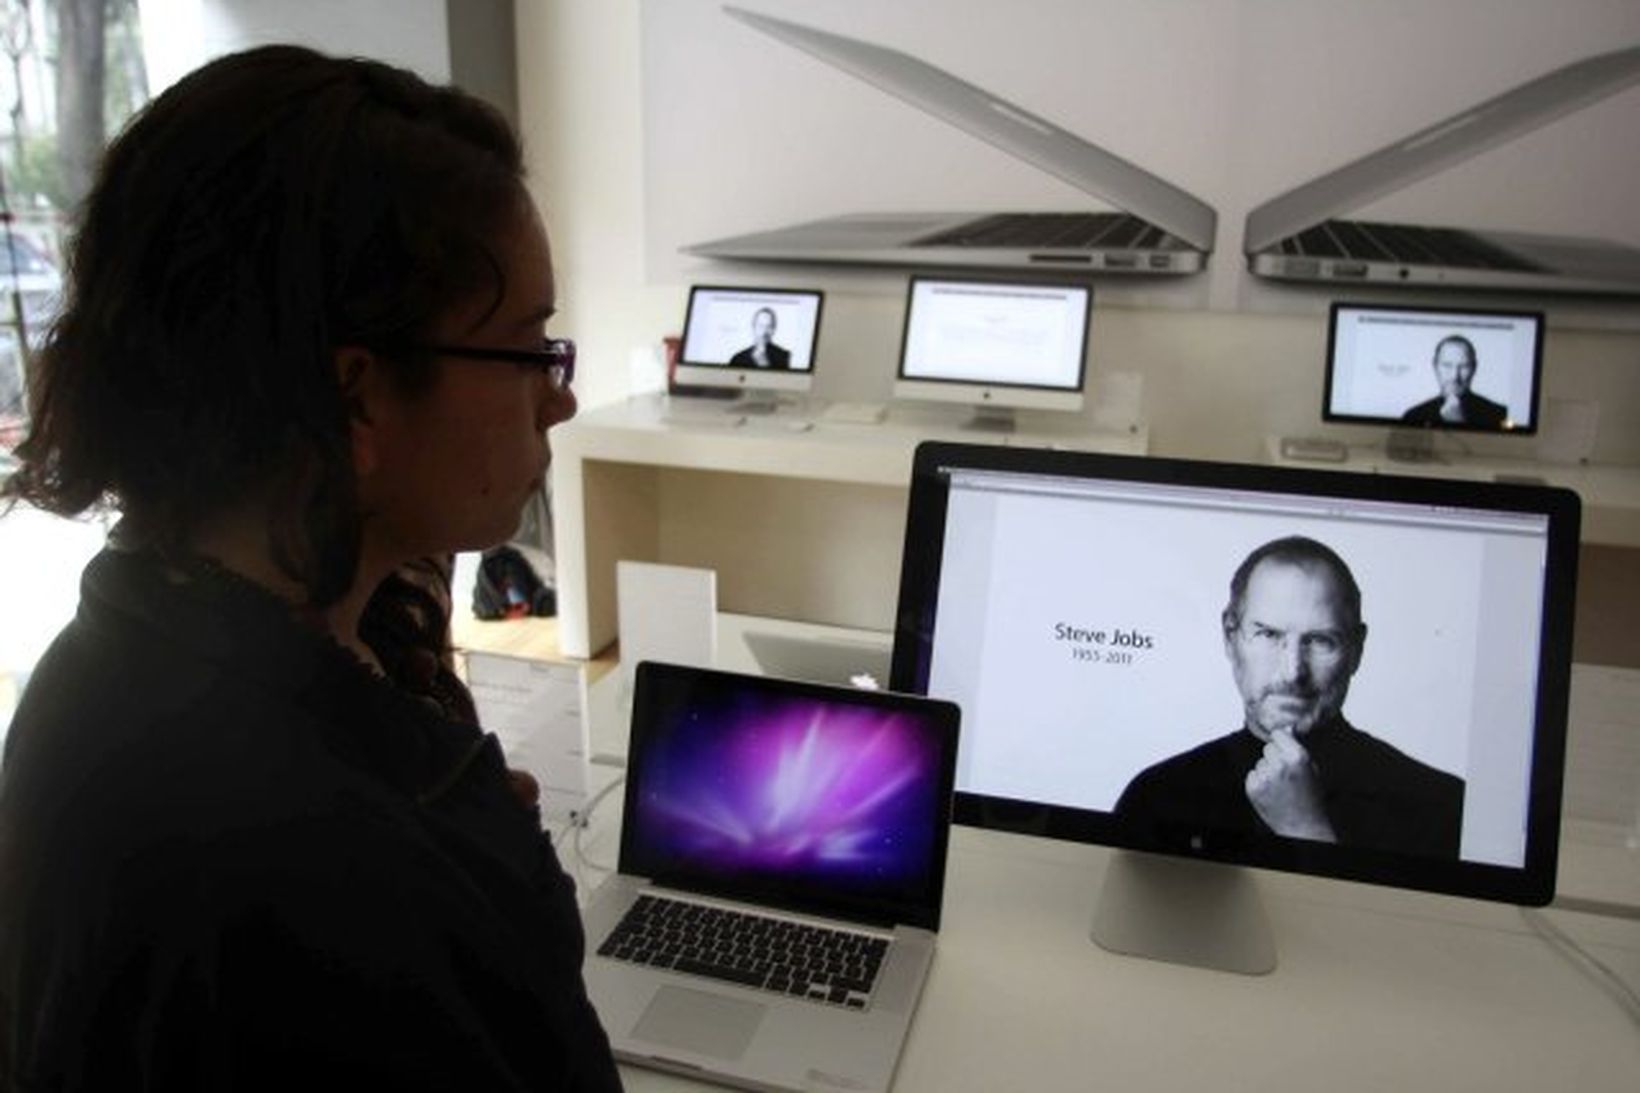 Myndir af Steve Jobs voru sýndar á skjám í verslunum …